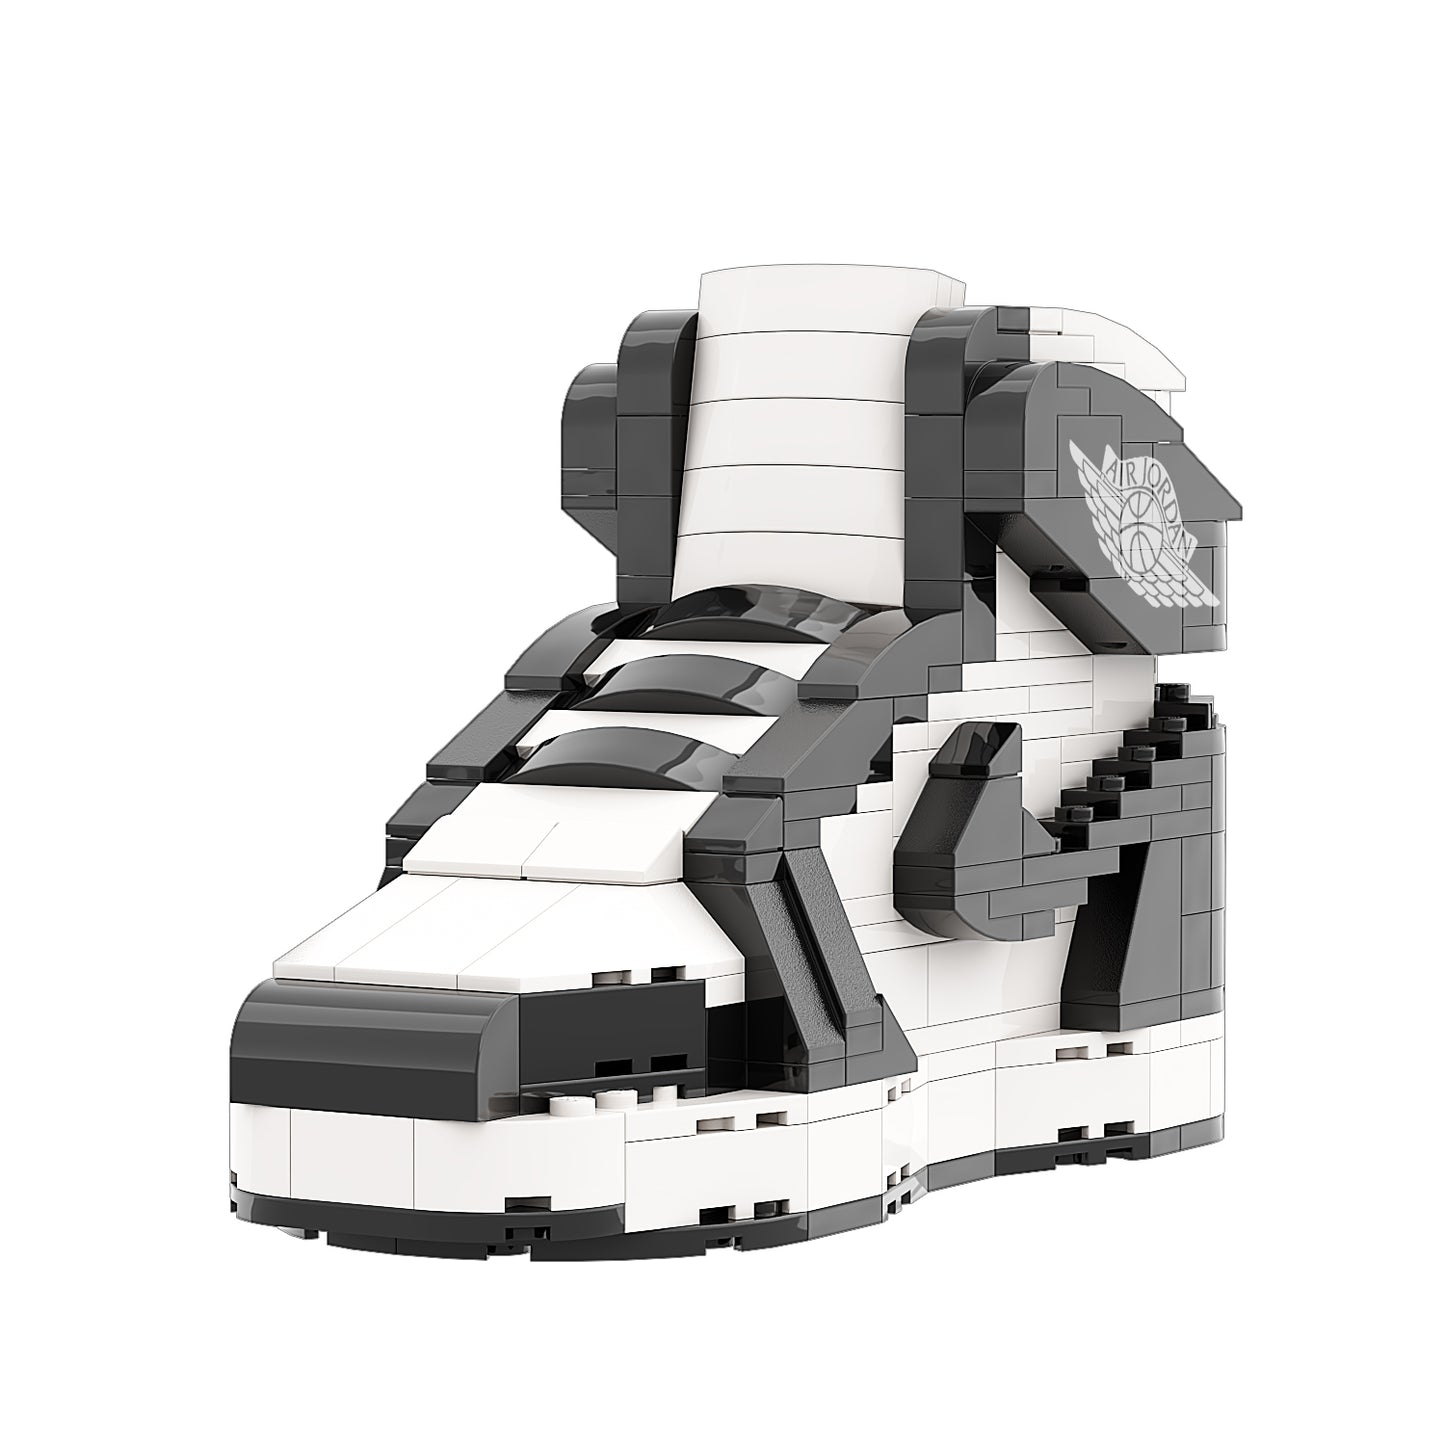 REGULAR "AJ1 OG Black/White" Sneaker Bricks with Mini Figure